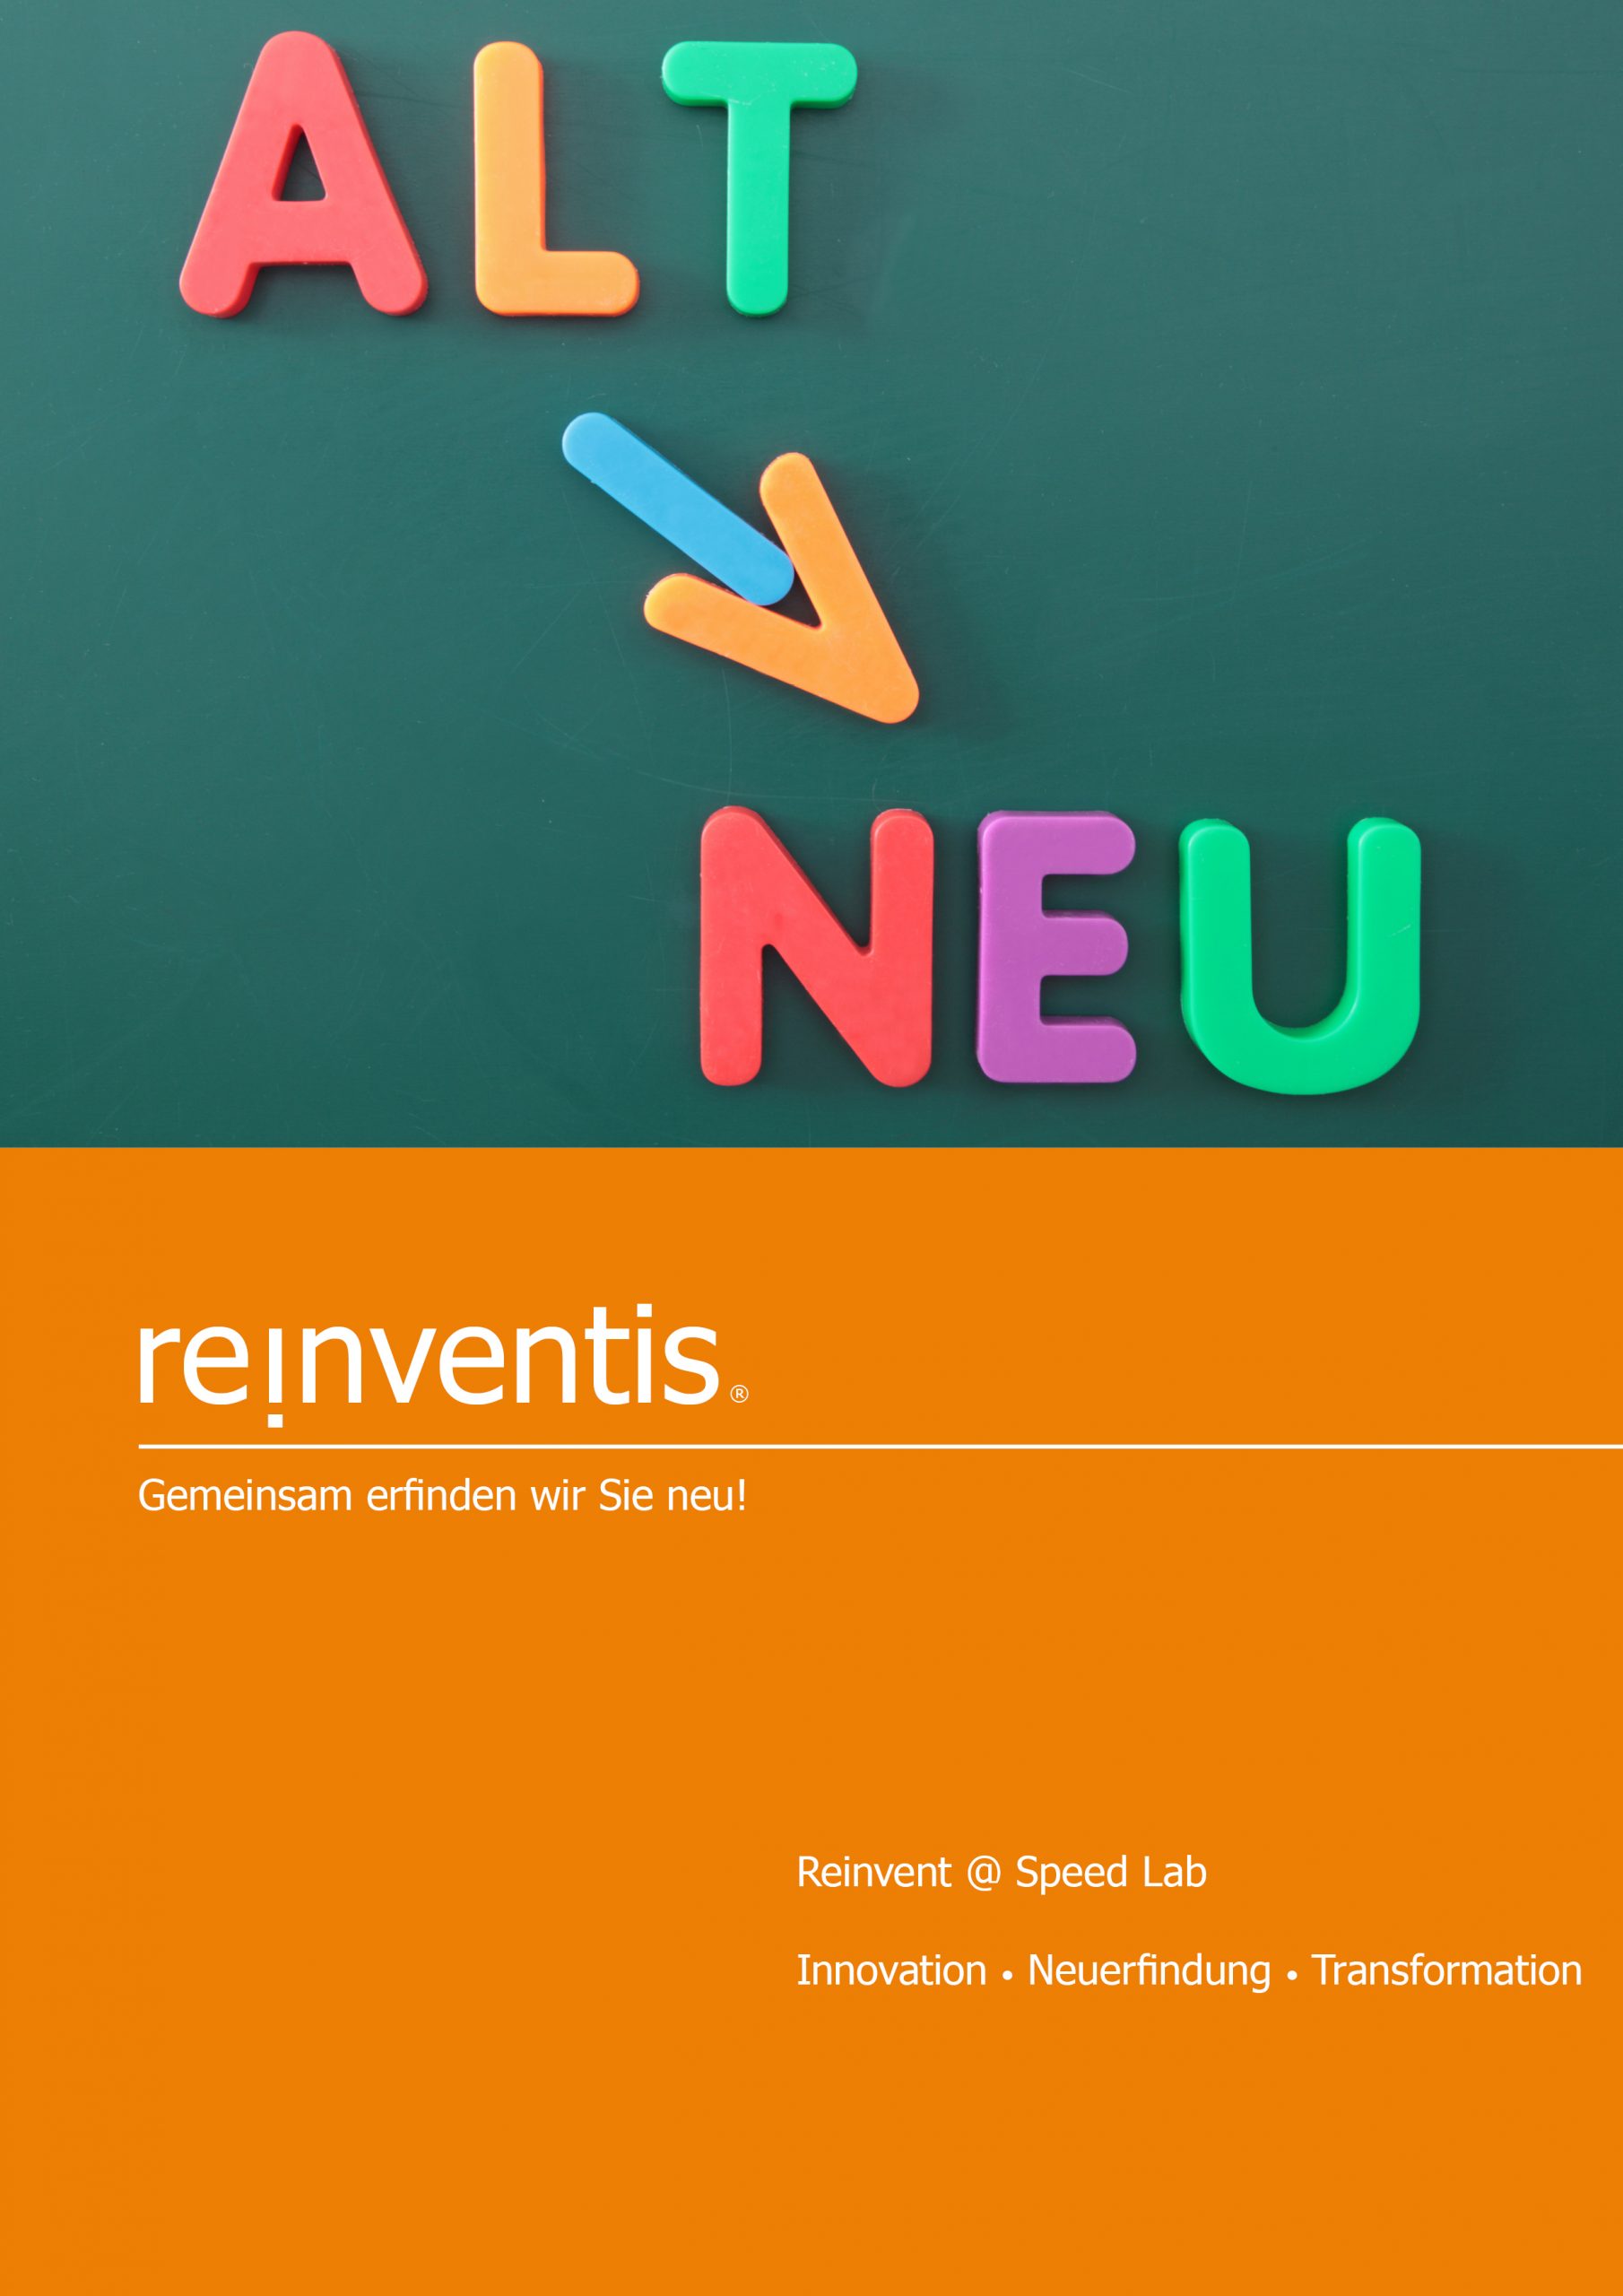 Reinvent @Speed Lab - Innovation, Reinvention und Transformation - REINVENTIS - München